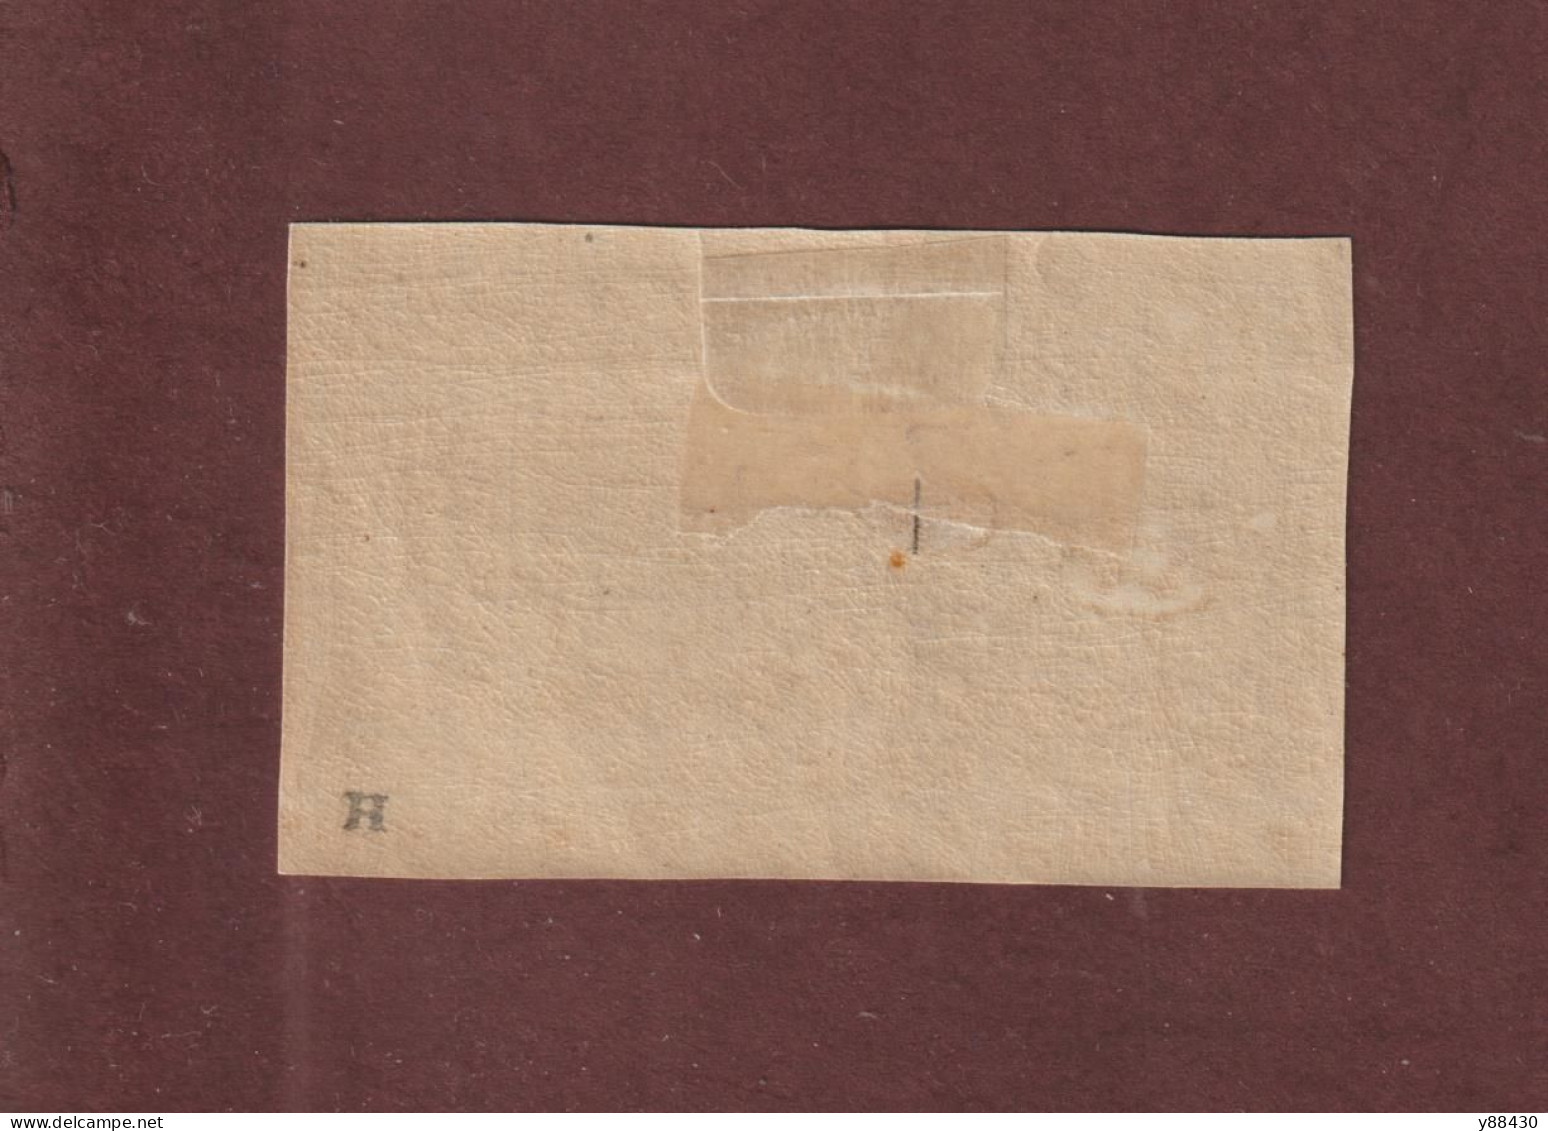 CÔTE FRANÇAISE DES SOMALIS - 7a  De 1894/1900 - Neuf * - Djibouti - Papier épais - 2c. Brun-lilas Et Noir  - 2 Scan - Ungebraucht